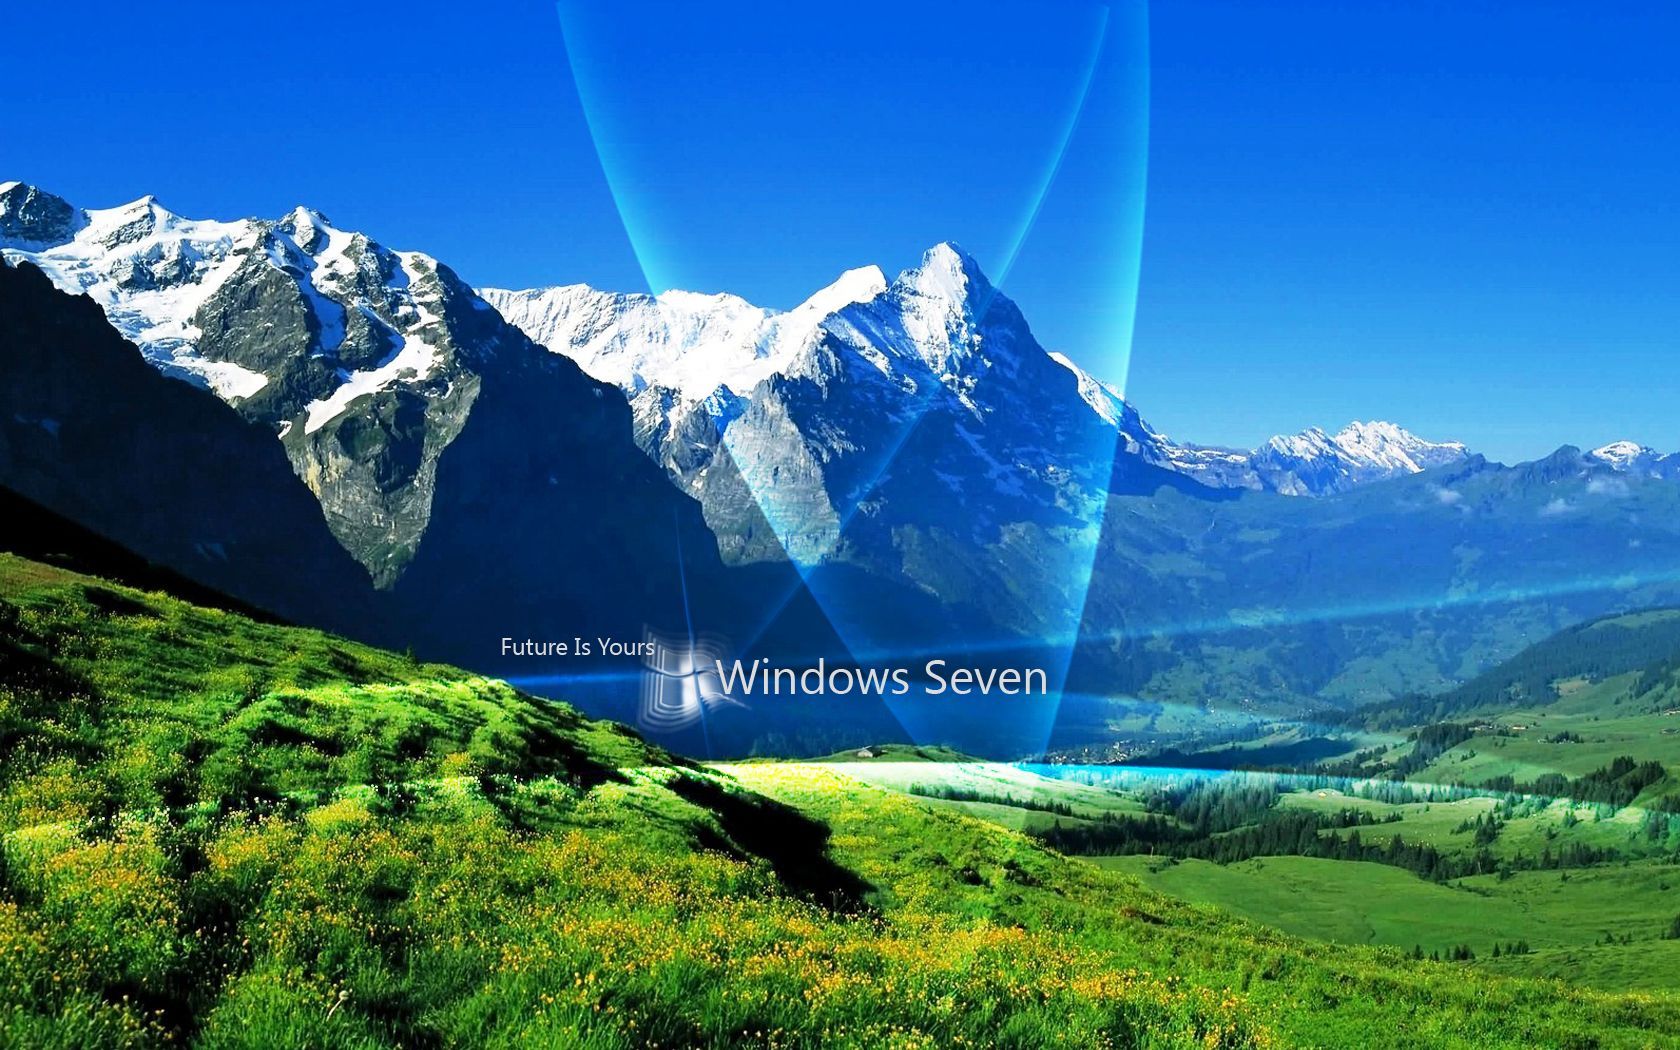 50 More Striking HD Windows 7 Wallpapers - Downloads - TechMynd